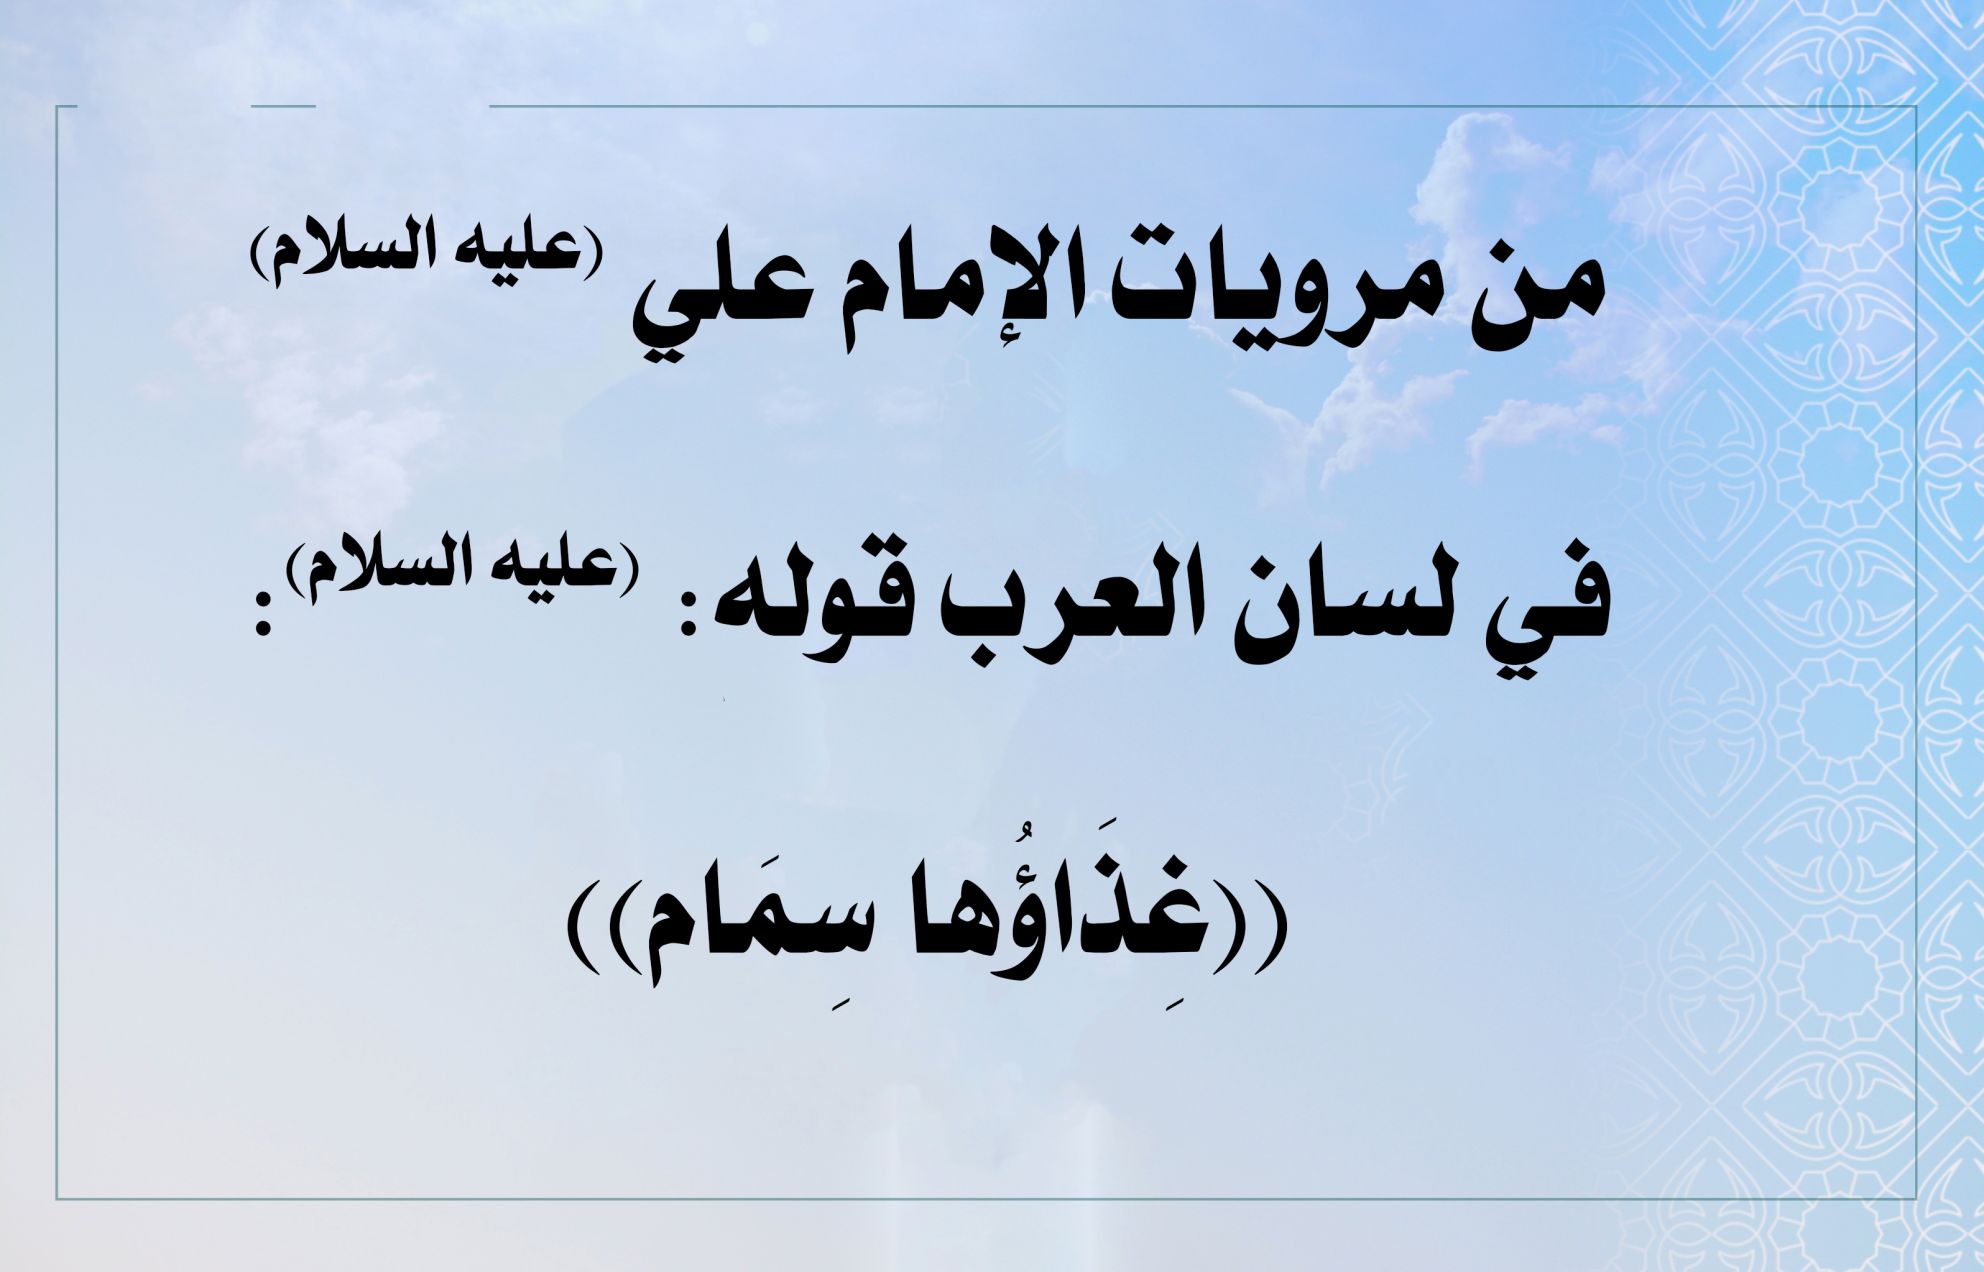 من مرويات الإمام علي (عليه السلام) في لسان العرب قوله (عليه السلام): ((غِذَاؤُها سِمَام))